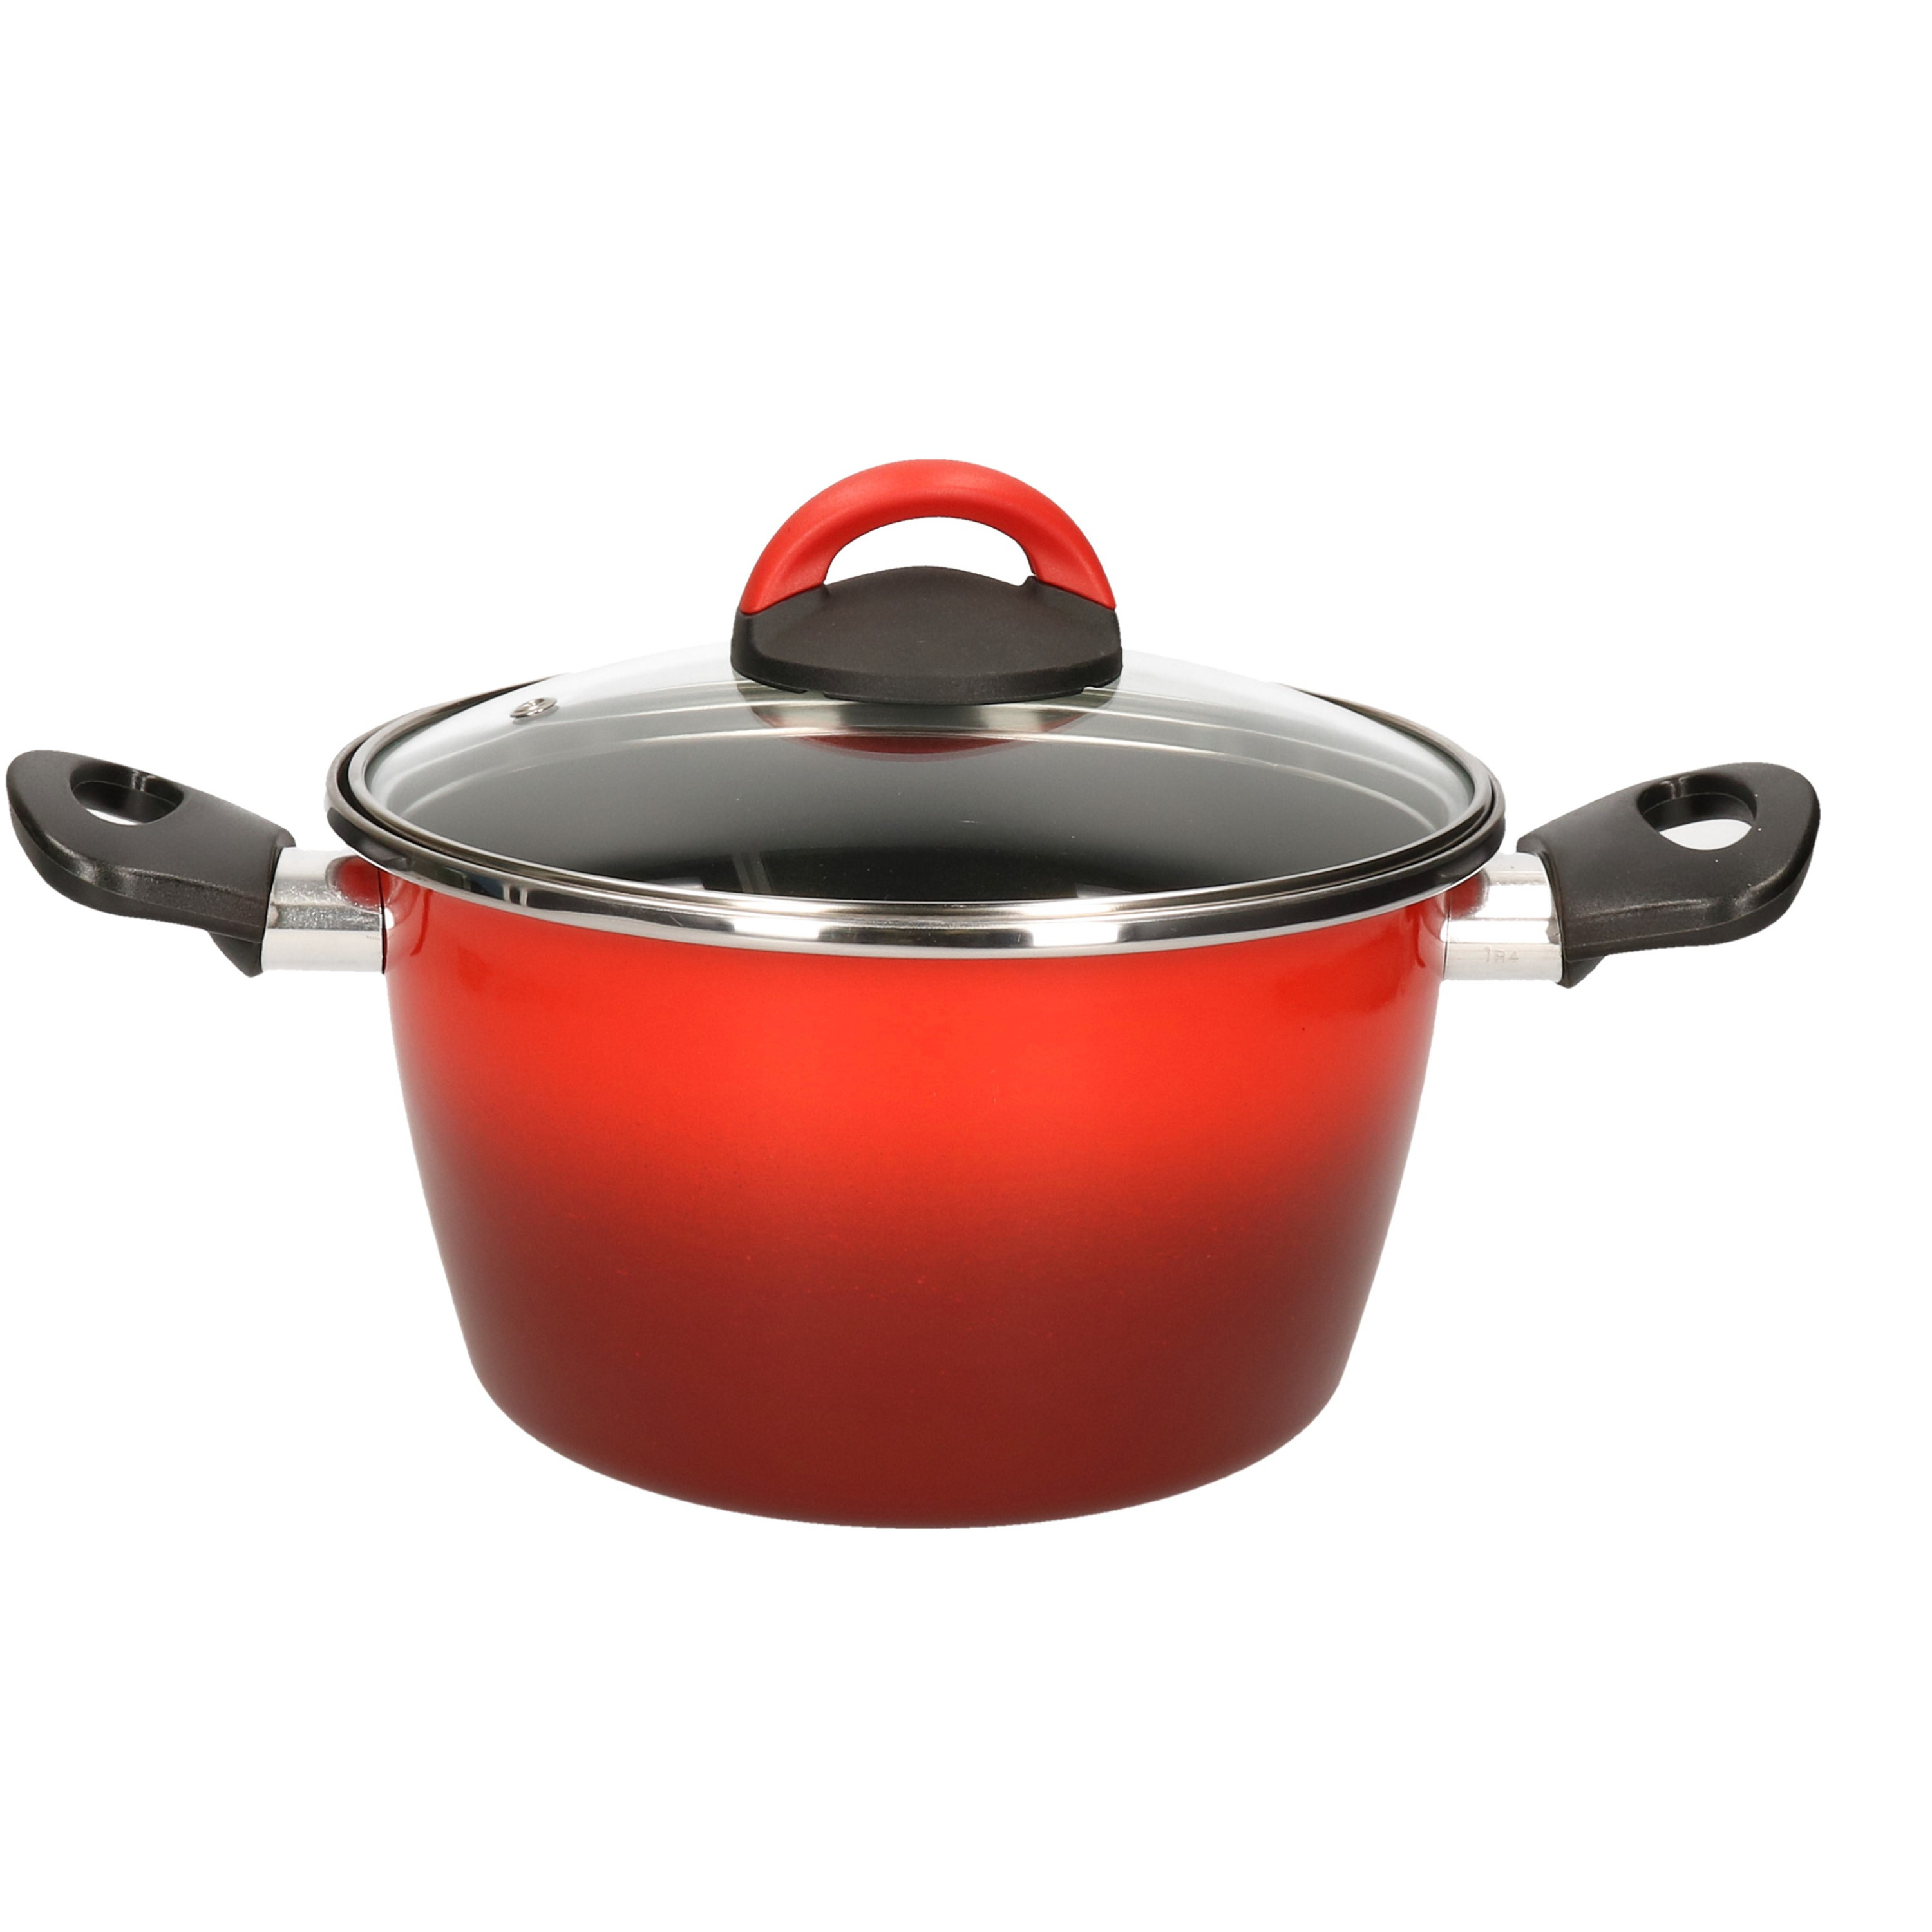 Rvs rode kookpan-pan met glazen deksel 20 cm 6 liter